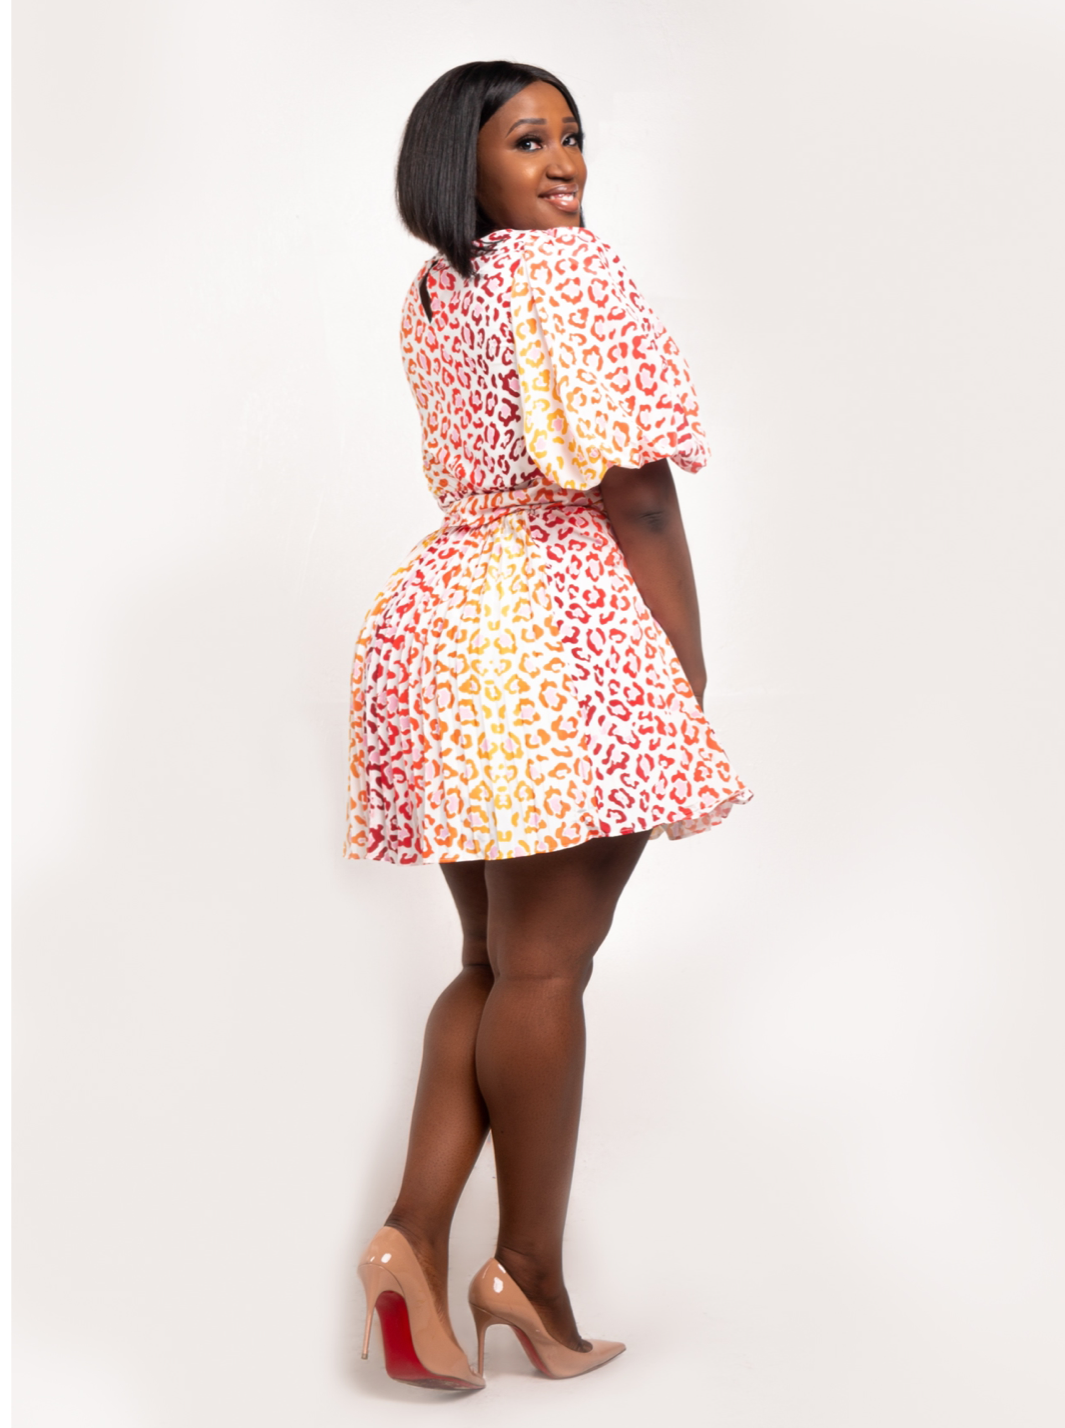 Sexy Brown Leopard Print Dress - Long Sleeve Dress - Maxi Dress - Lulus